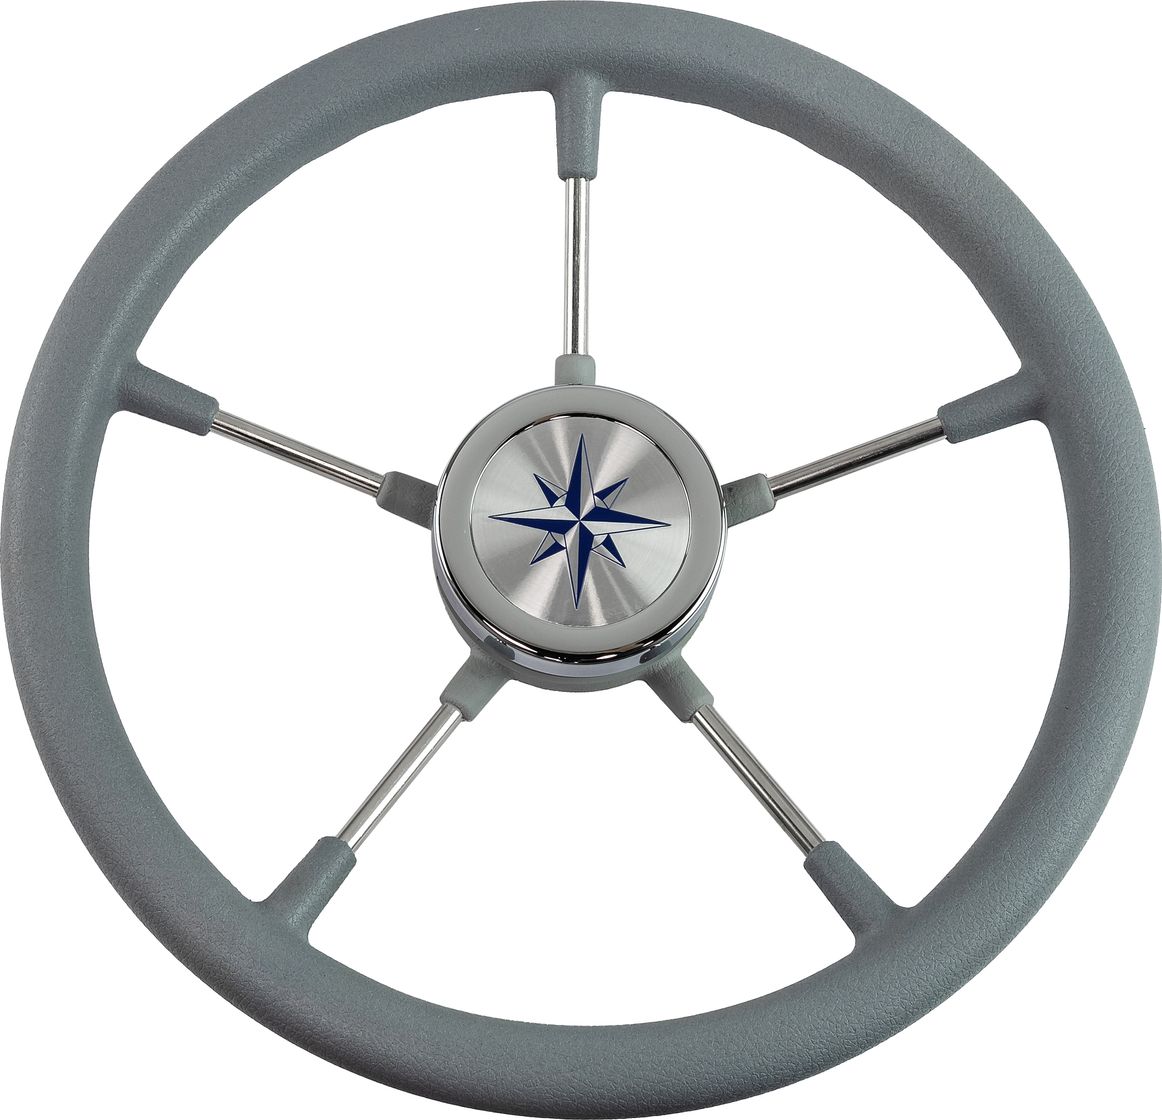 Рулевое колесо RIVA RSL обод серый, спицы серебряные д. 360 мм VN735022-03 рулевое колесо leader tanegum серый обод серебряные спицы д 330 мм vn7330 03